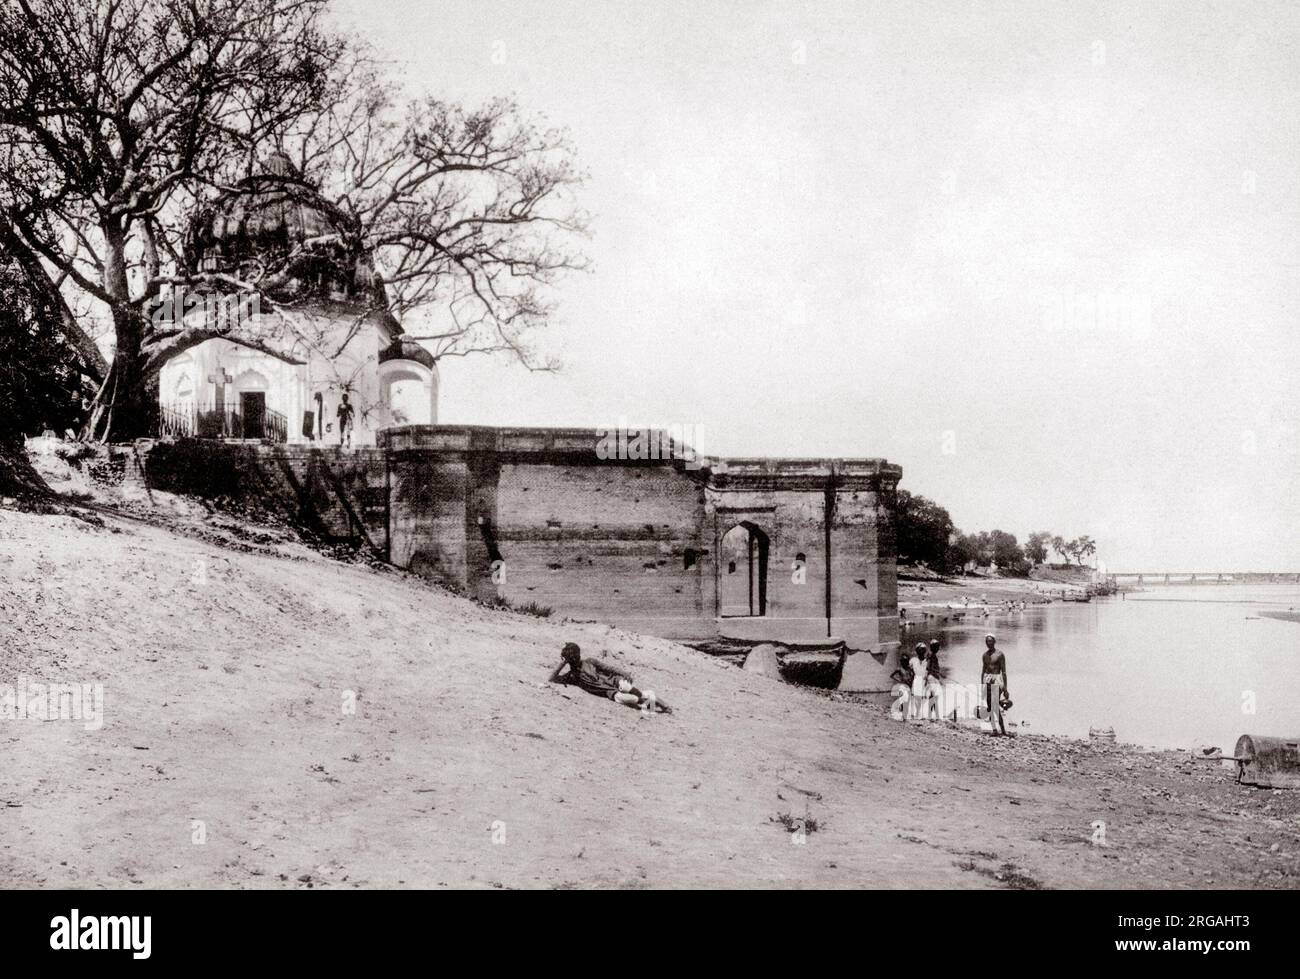 C. 1880 Indien - satti oder Massaker Chaura Ghat Ghat in Kanpur, Cawnpore, Uttar Pradesh, Bank des Flusses Ganges - Szene der Tötung von 300 britischen Männer, Frauen und Kinder während des indischen Aufstands von 1857, Stockfoto